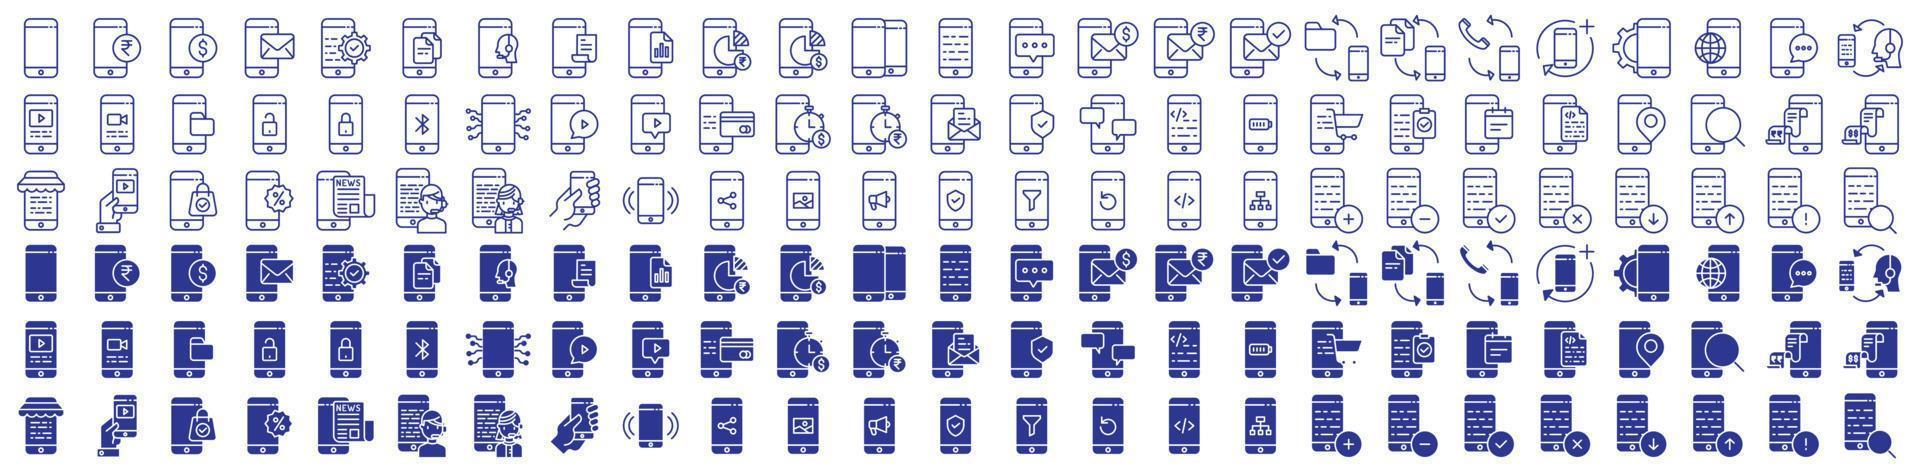 coleção de ícones relacionados a aplicativos móveis e desenvolvimento, incluindo ícones como telefone celular, pagamento, configurações, suporte técnico e muito mais. ilustrações vetoriais, pixel perfeito vetor